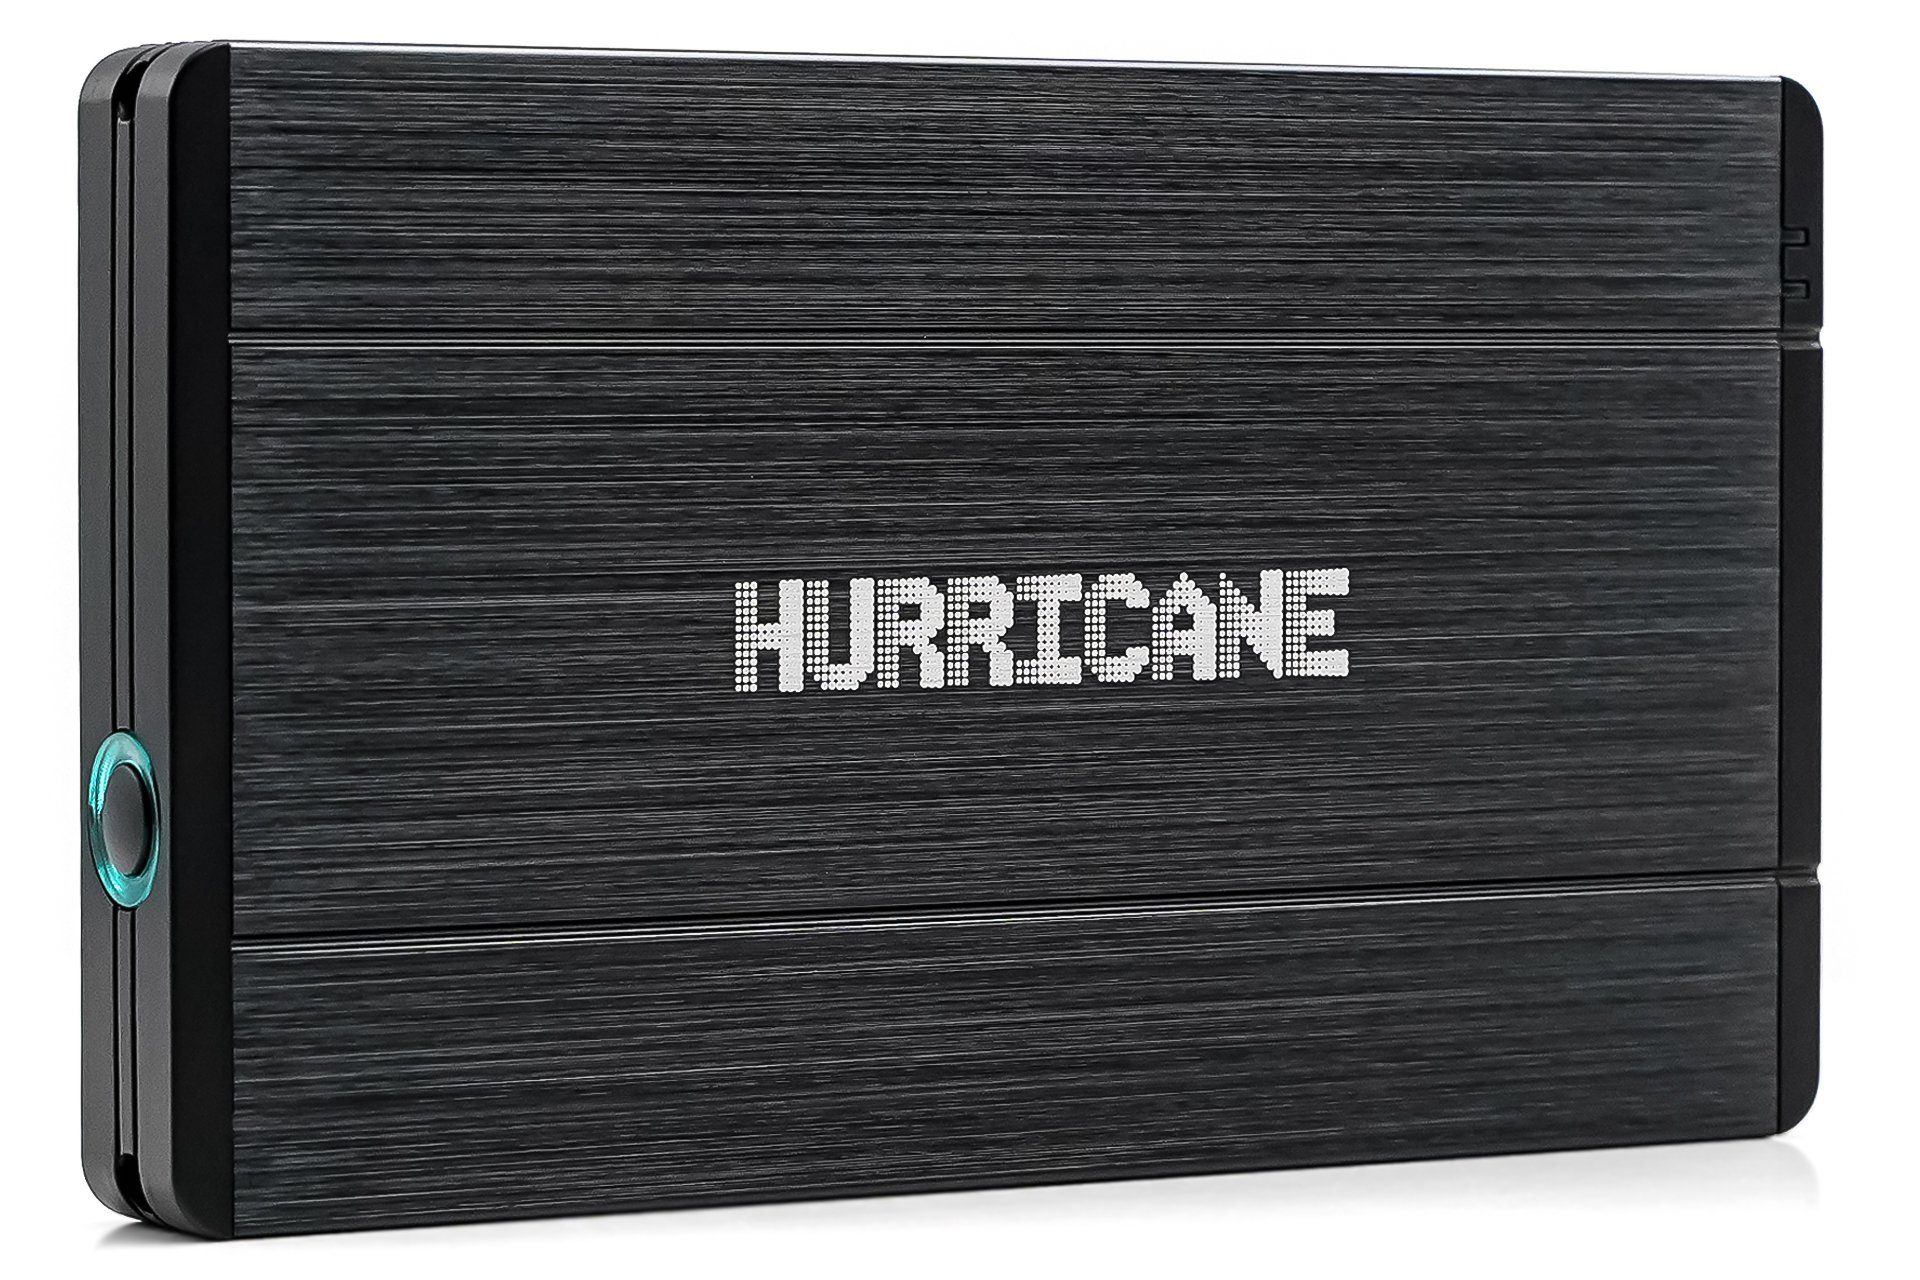 HURRICANE Hurricane 12.5mm GD25650 500GB 2.5" USB 3.0 Externe Aluminium Festpla externe HDD-Festplatte